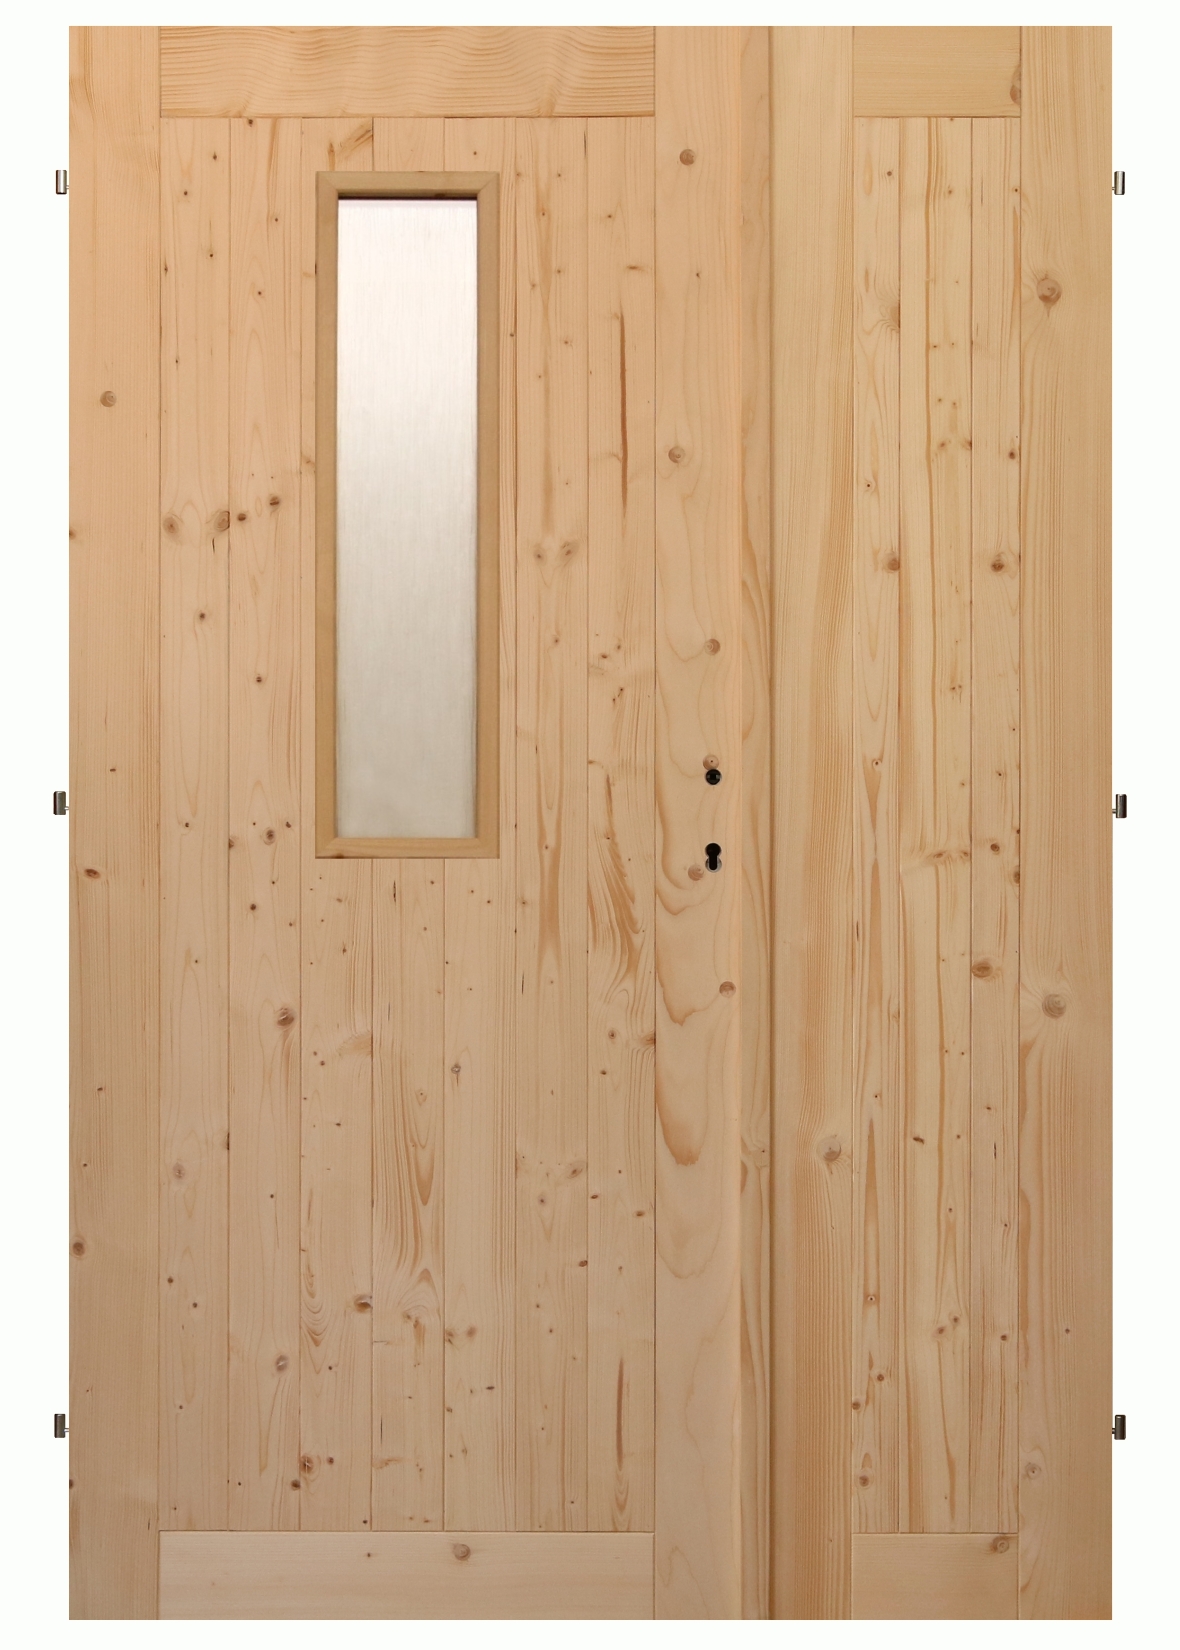 Palubkové dveře dvoukřídlé č.2 (šíře 160cm)